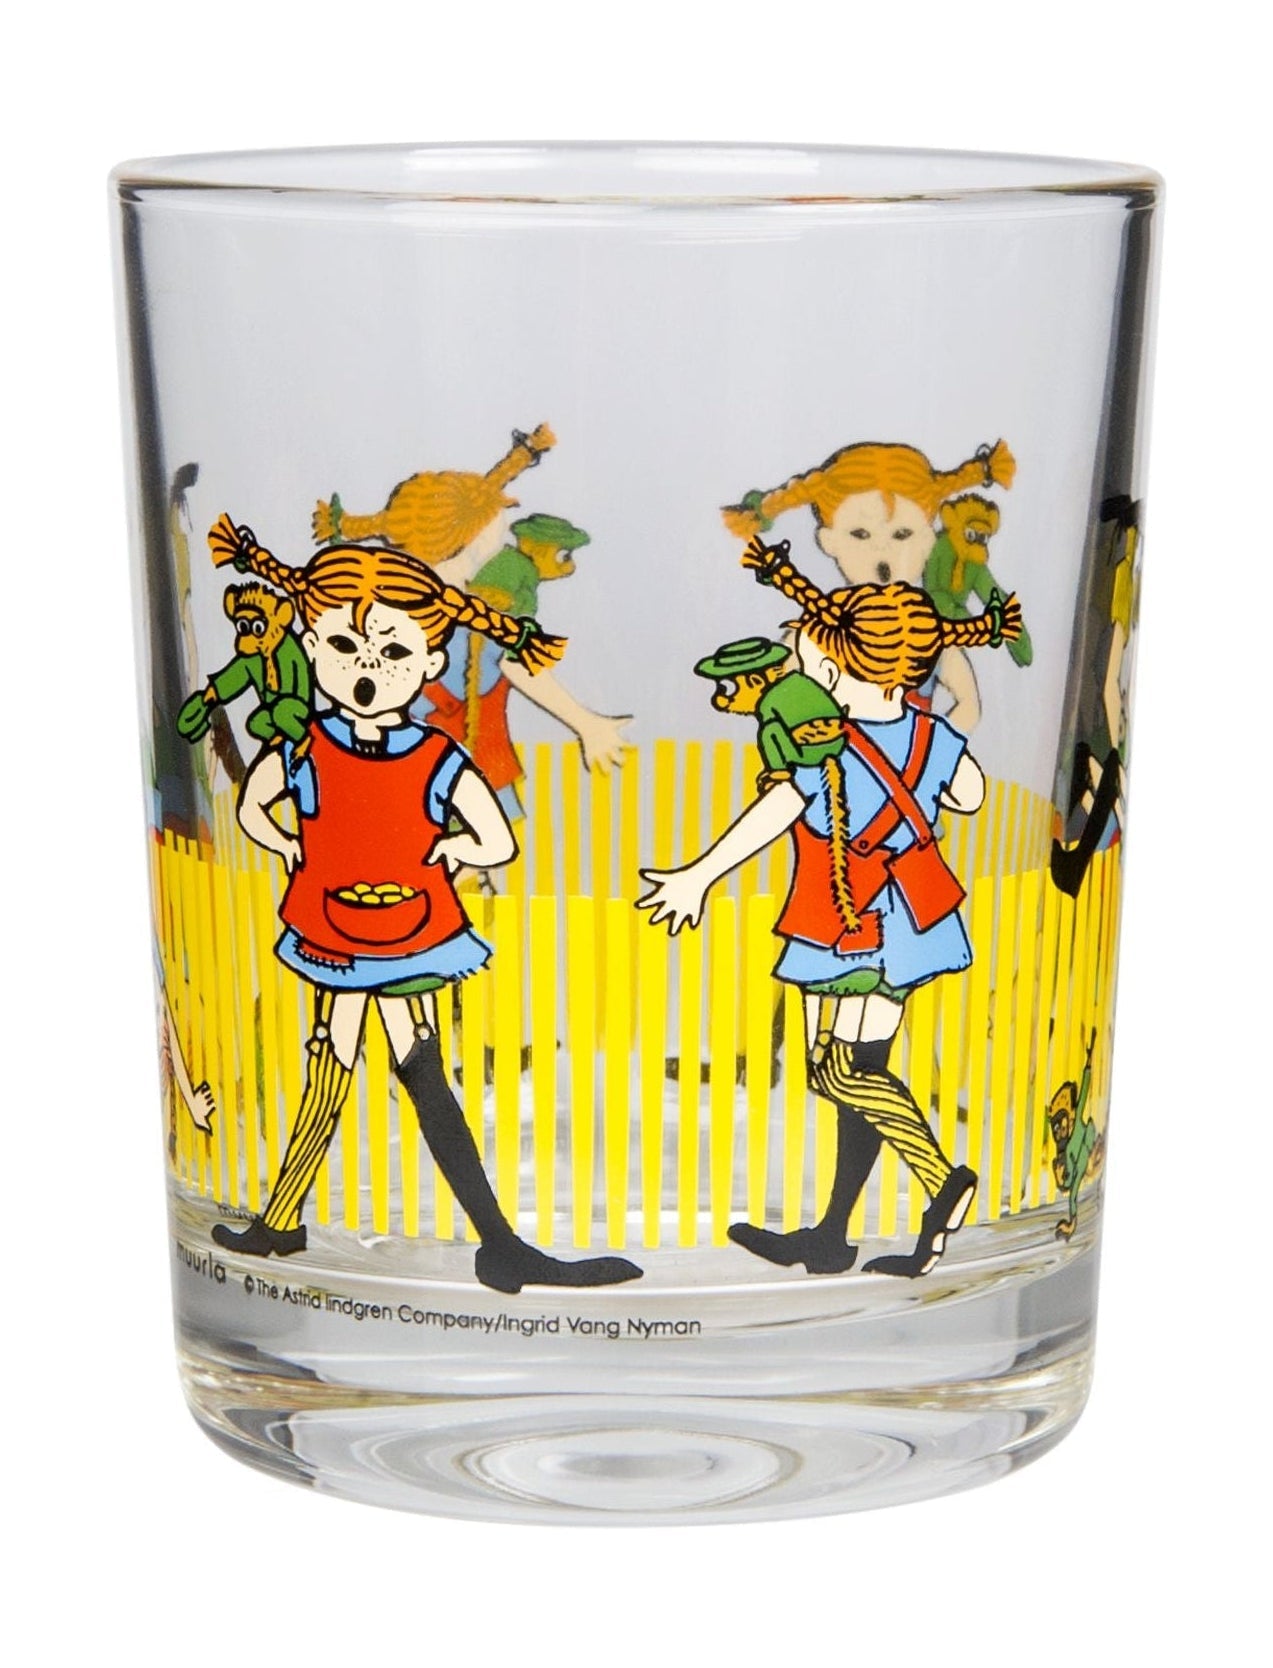 Muurla Pippi Longstocking drinkglas, Pippi Longstocking